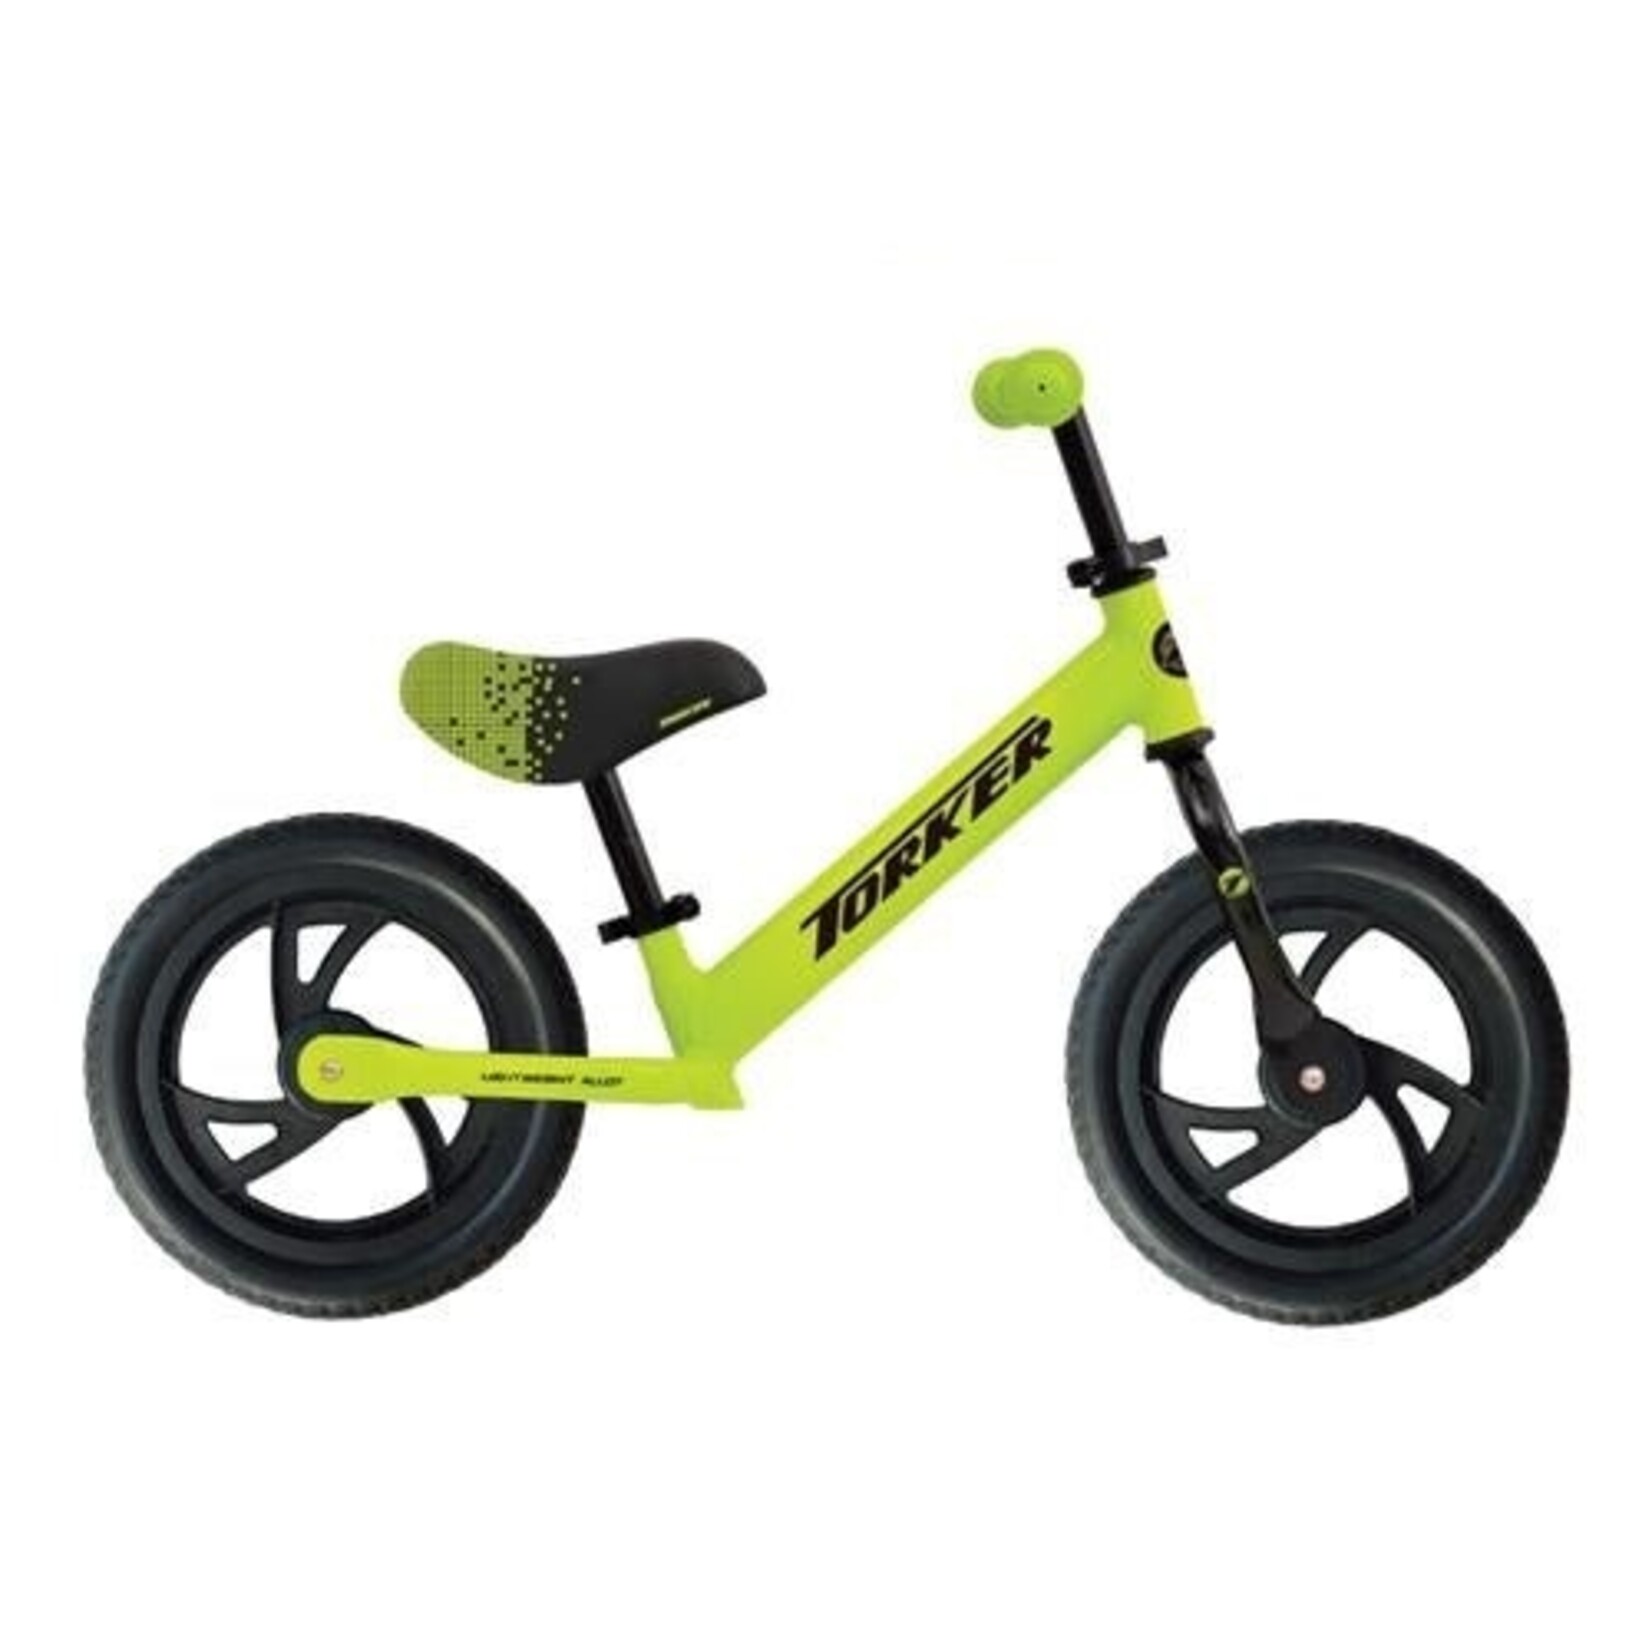 Torker Torker Kid Balance Bike Wheels Suit Children 18 Months-5 Years - Neon With Black